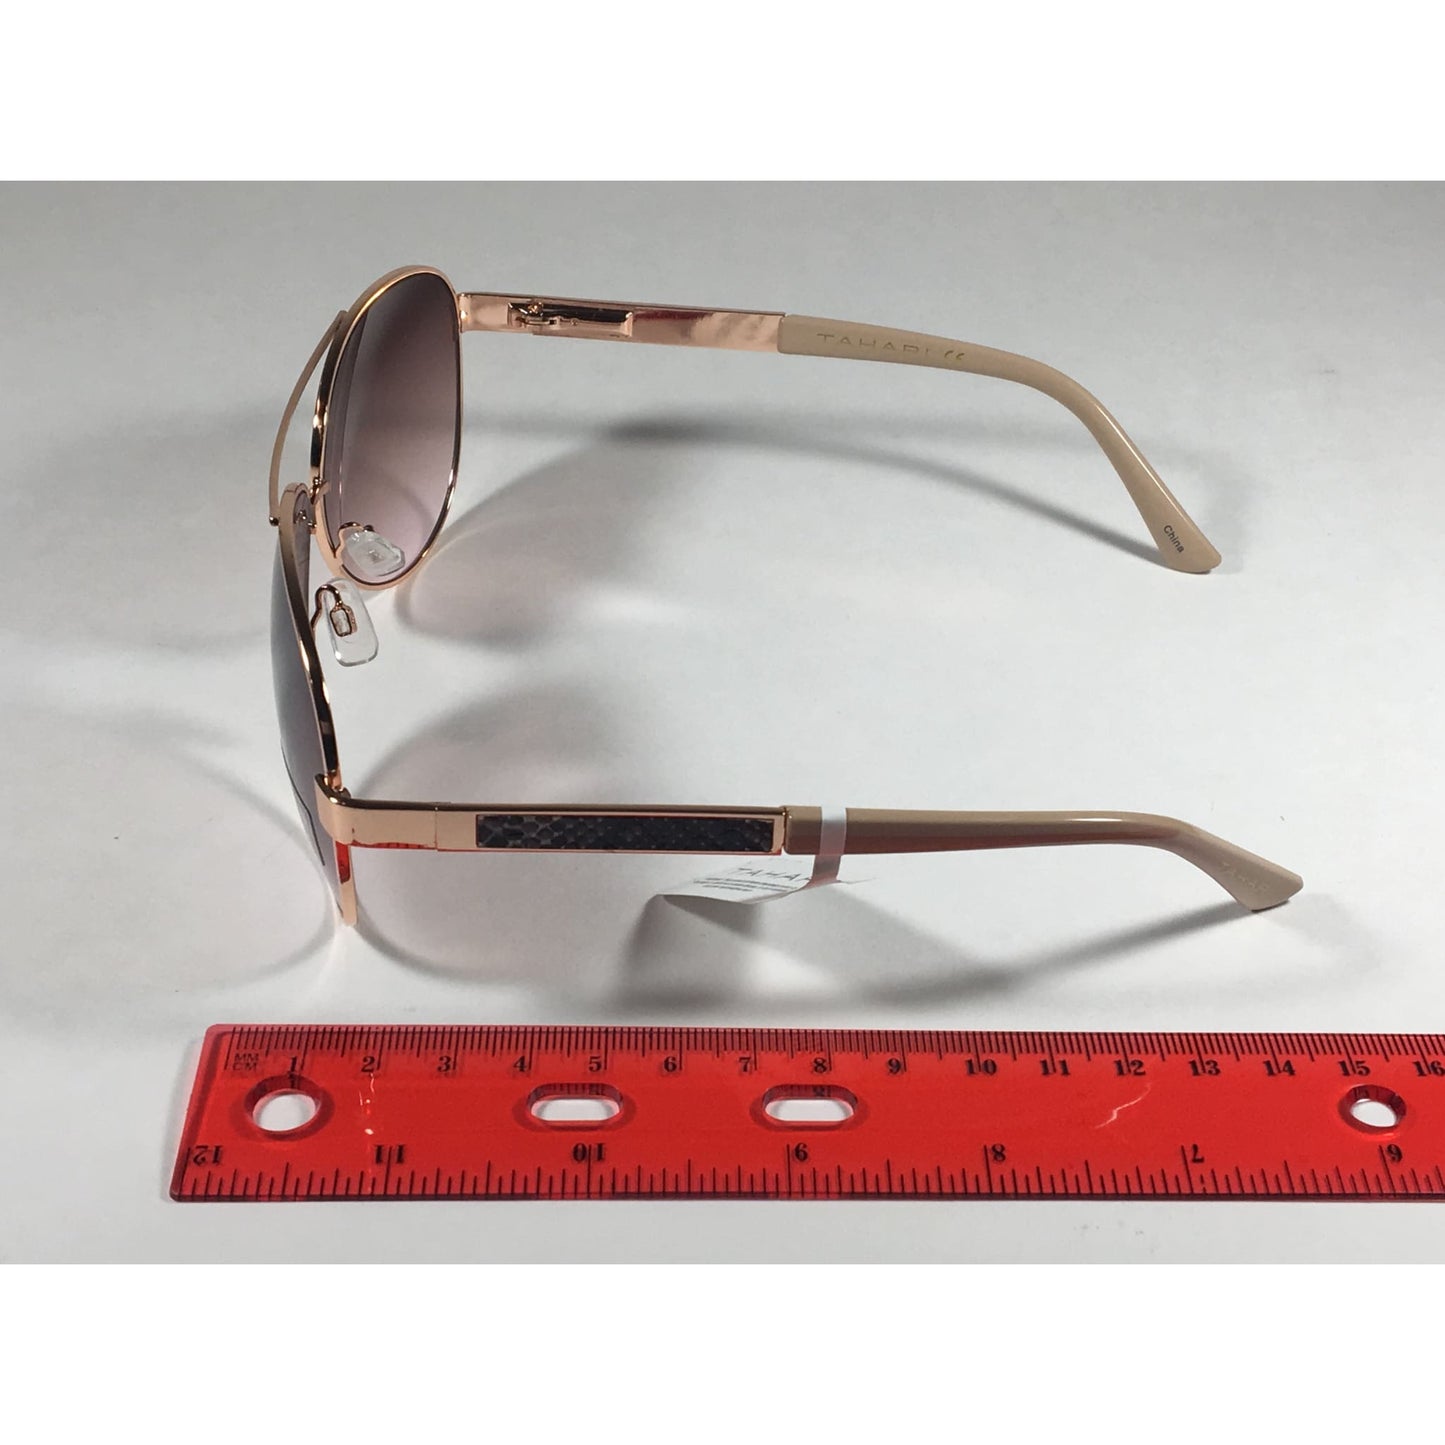 Tahari Aviator Sunglasses Rose Gold Nude Brown Pink Gradient Lens TH527 RGLD - Sunglasses